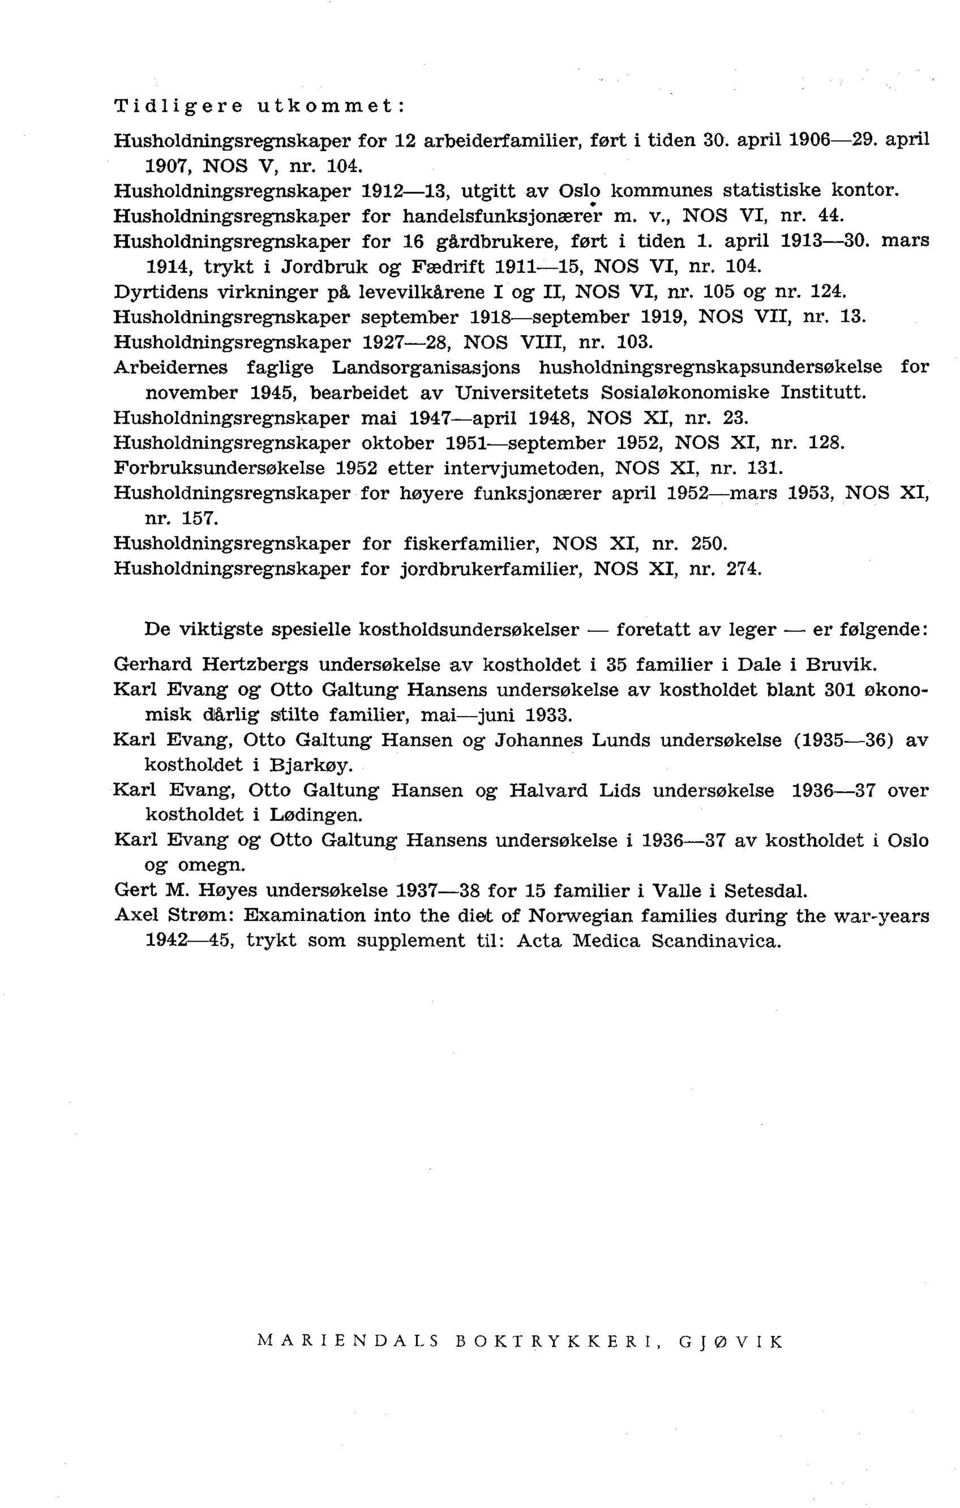 Husholdningsregnskaper for 16 gårdbrukere, ført i tiden 1. april 1913-30. mars 1914, trykt i Jordbruk og Fædrift 1911-15, NOS VI, nr. 104. Dyrtidens virkninger på levevilkårene I og II, NOS VI, nr.